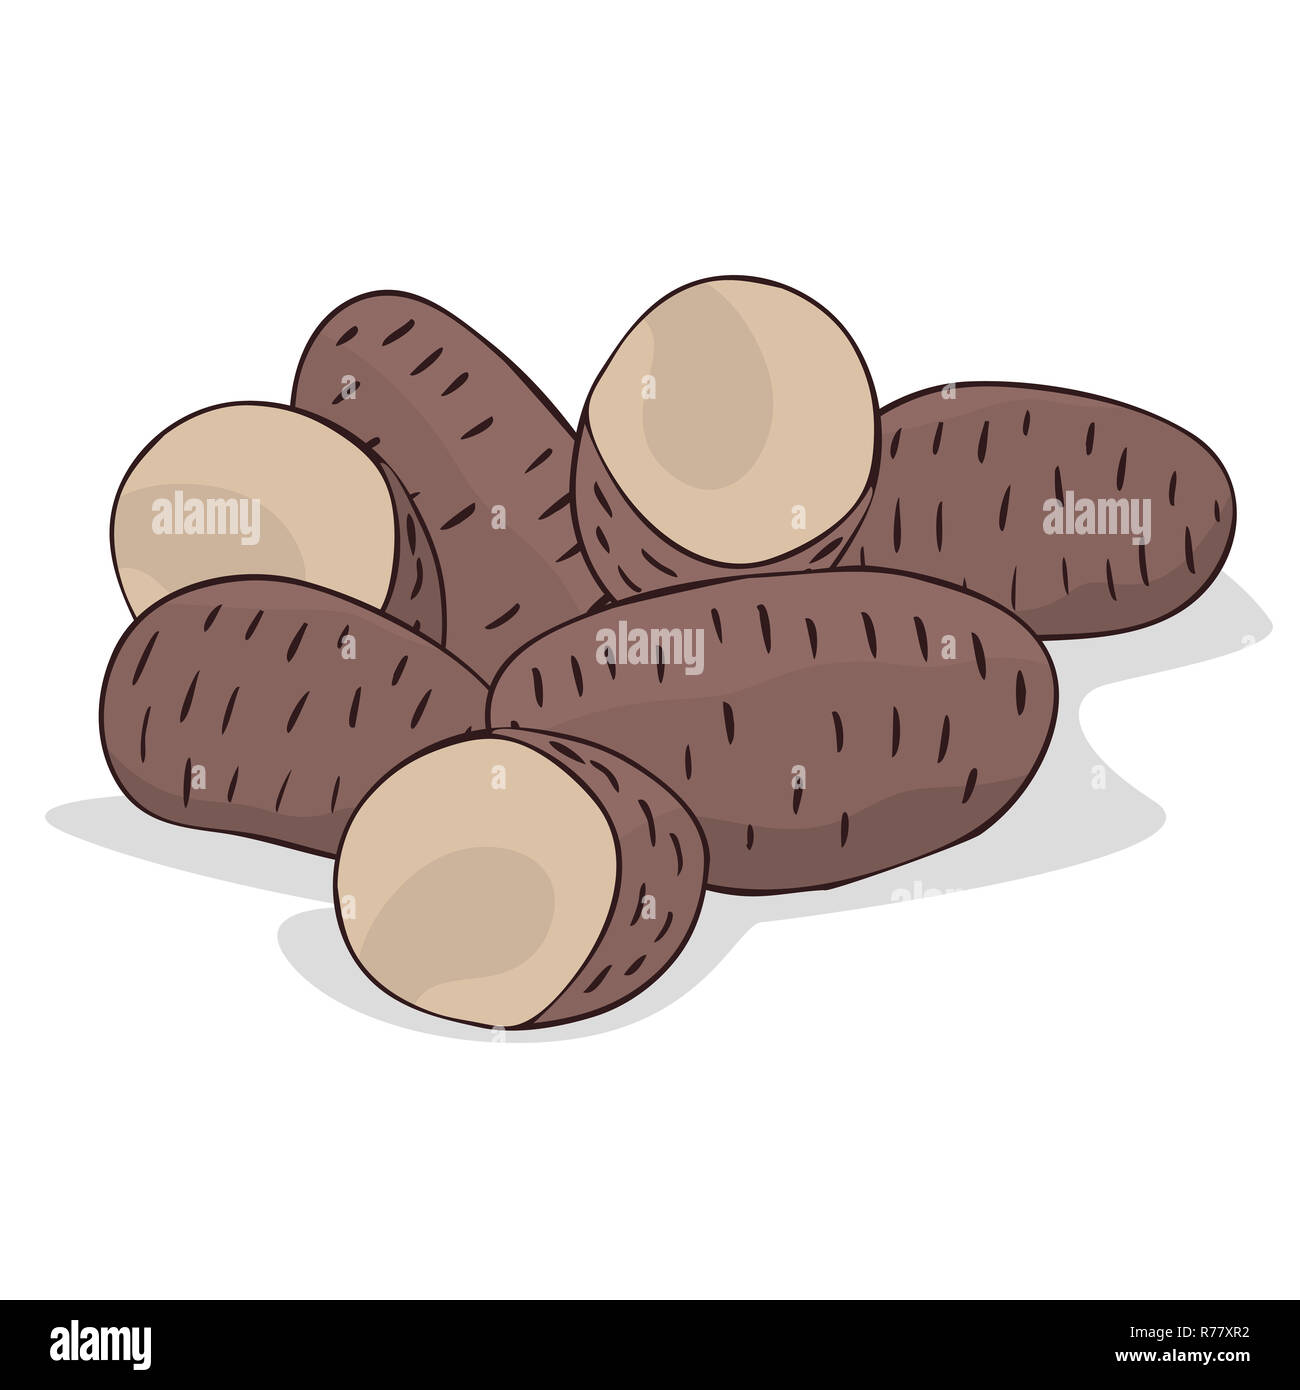 Aislar los tubérculos de patata russet maduras Foto de stock